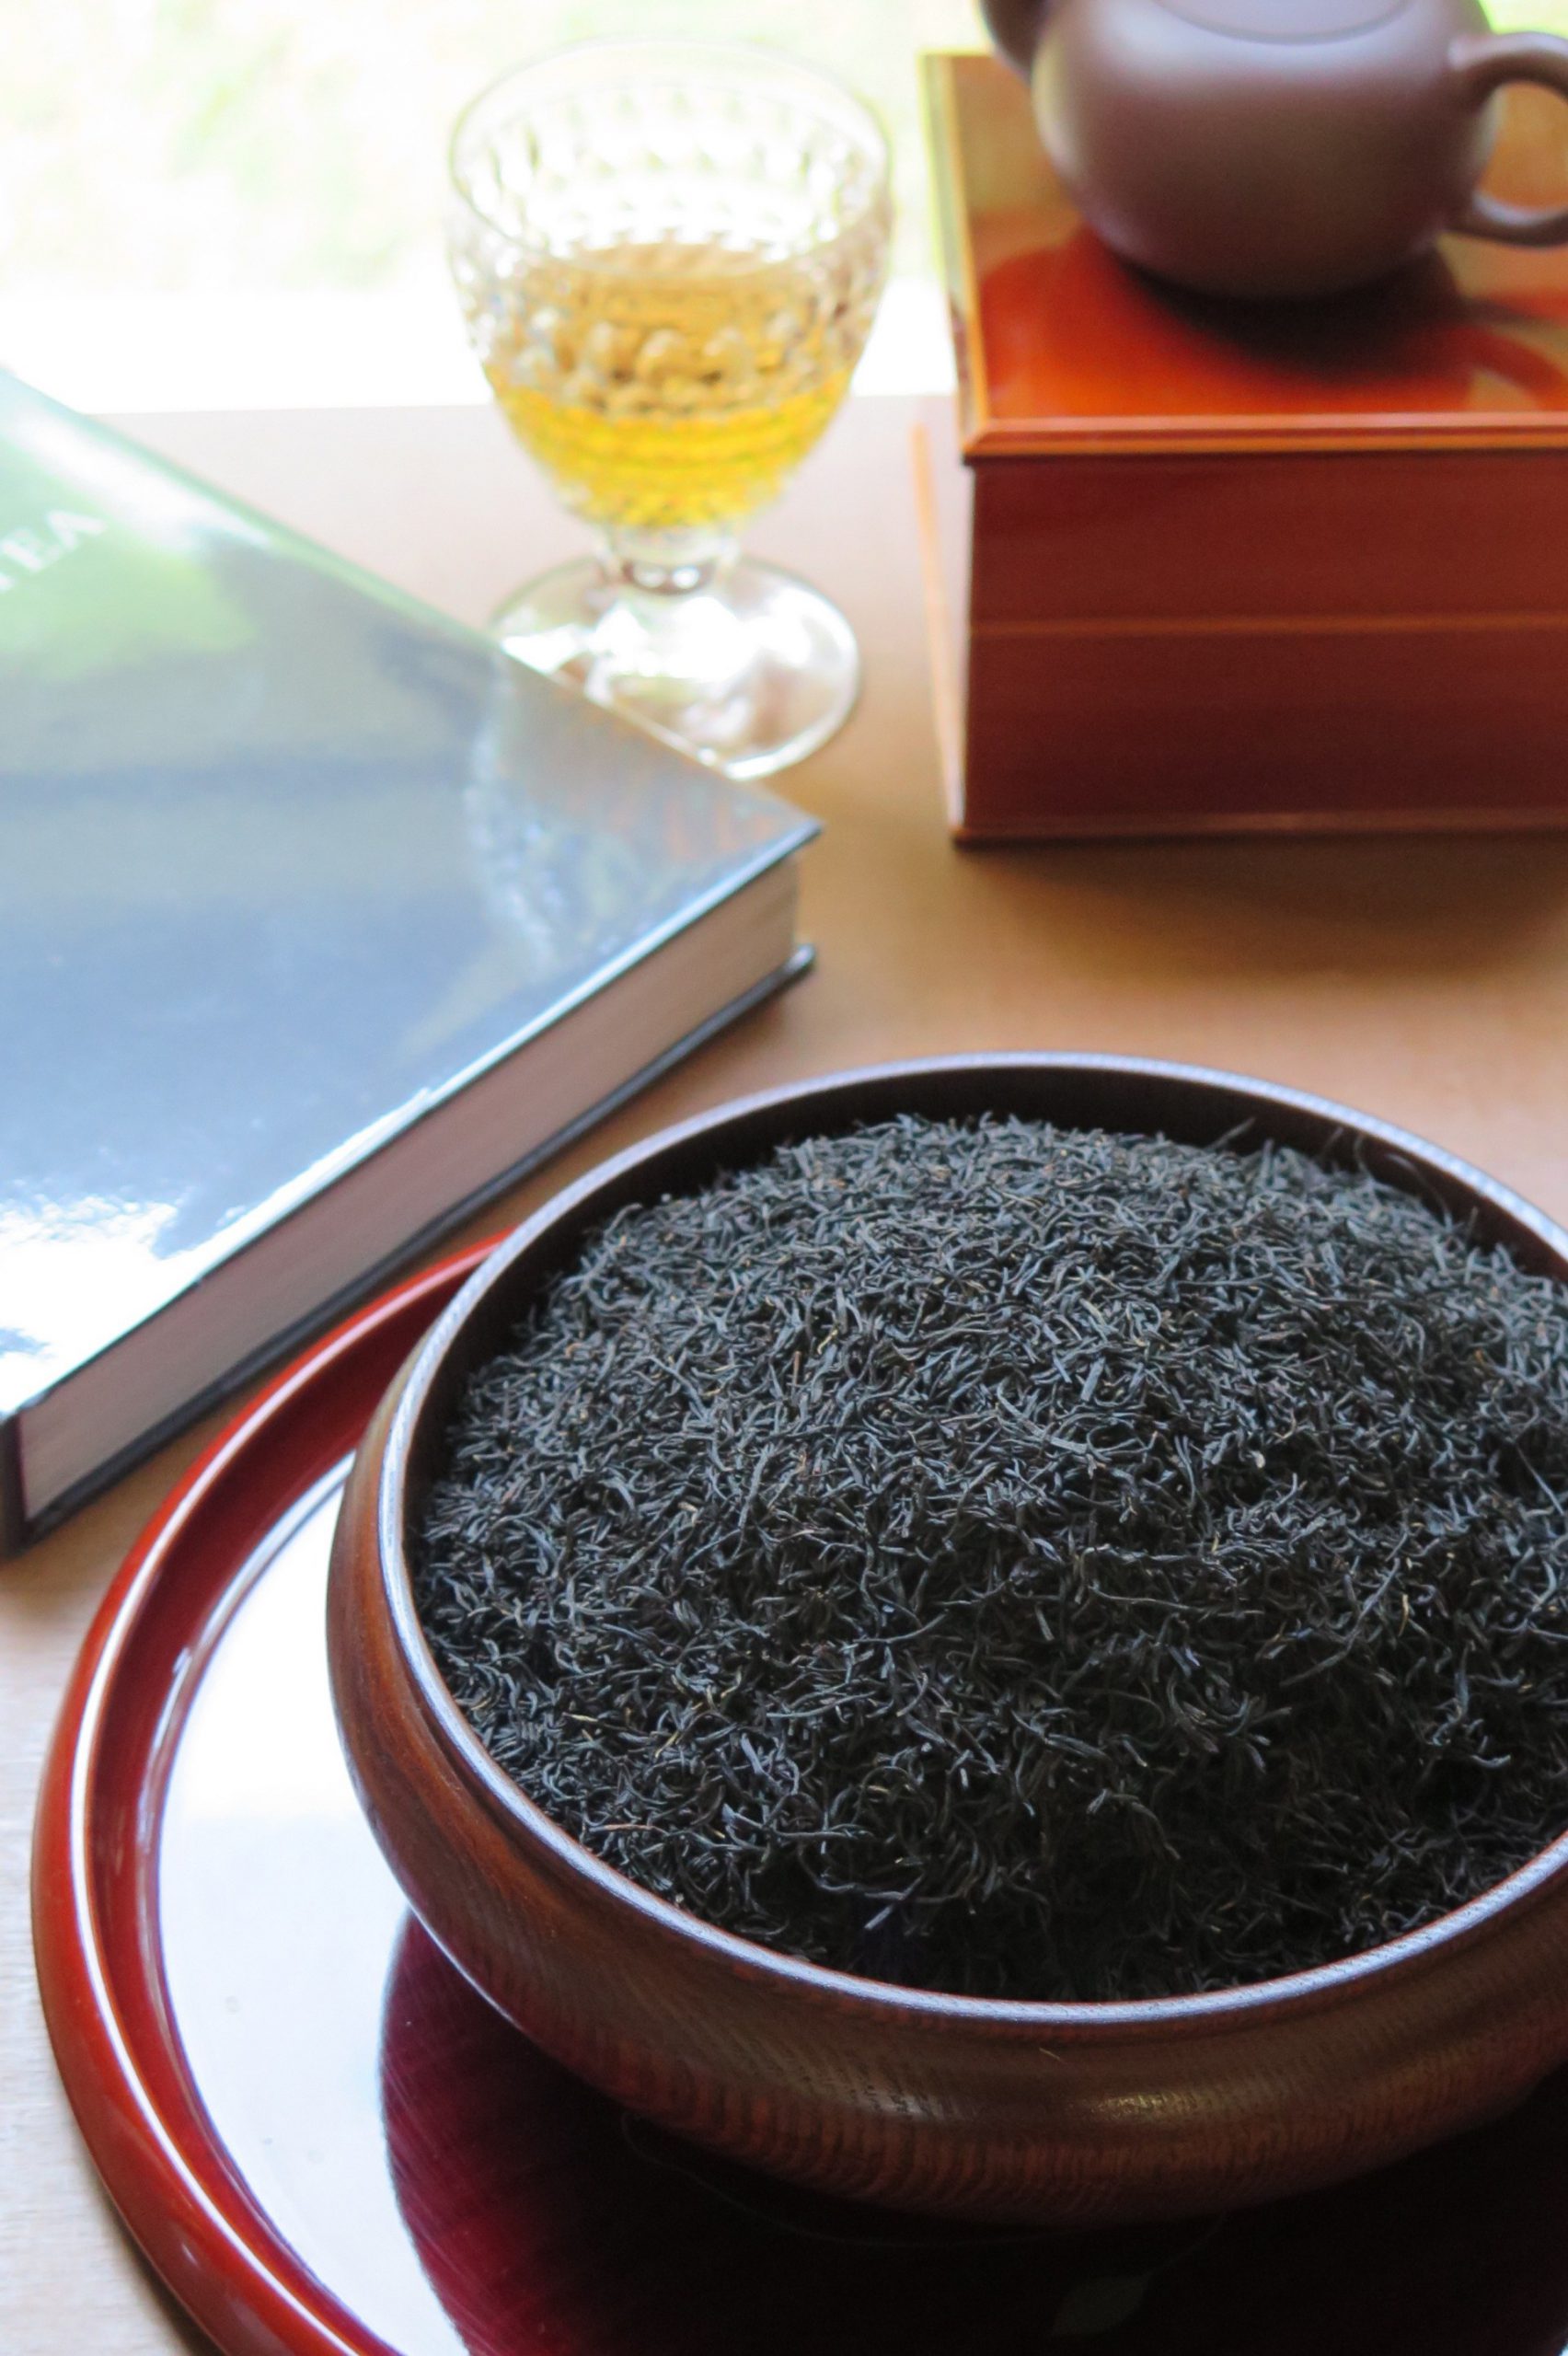 kyobashi tea - การ เก็บรักษาชา เก่า- ชาดำ